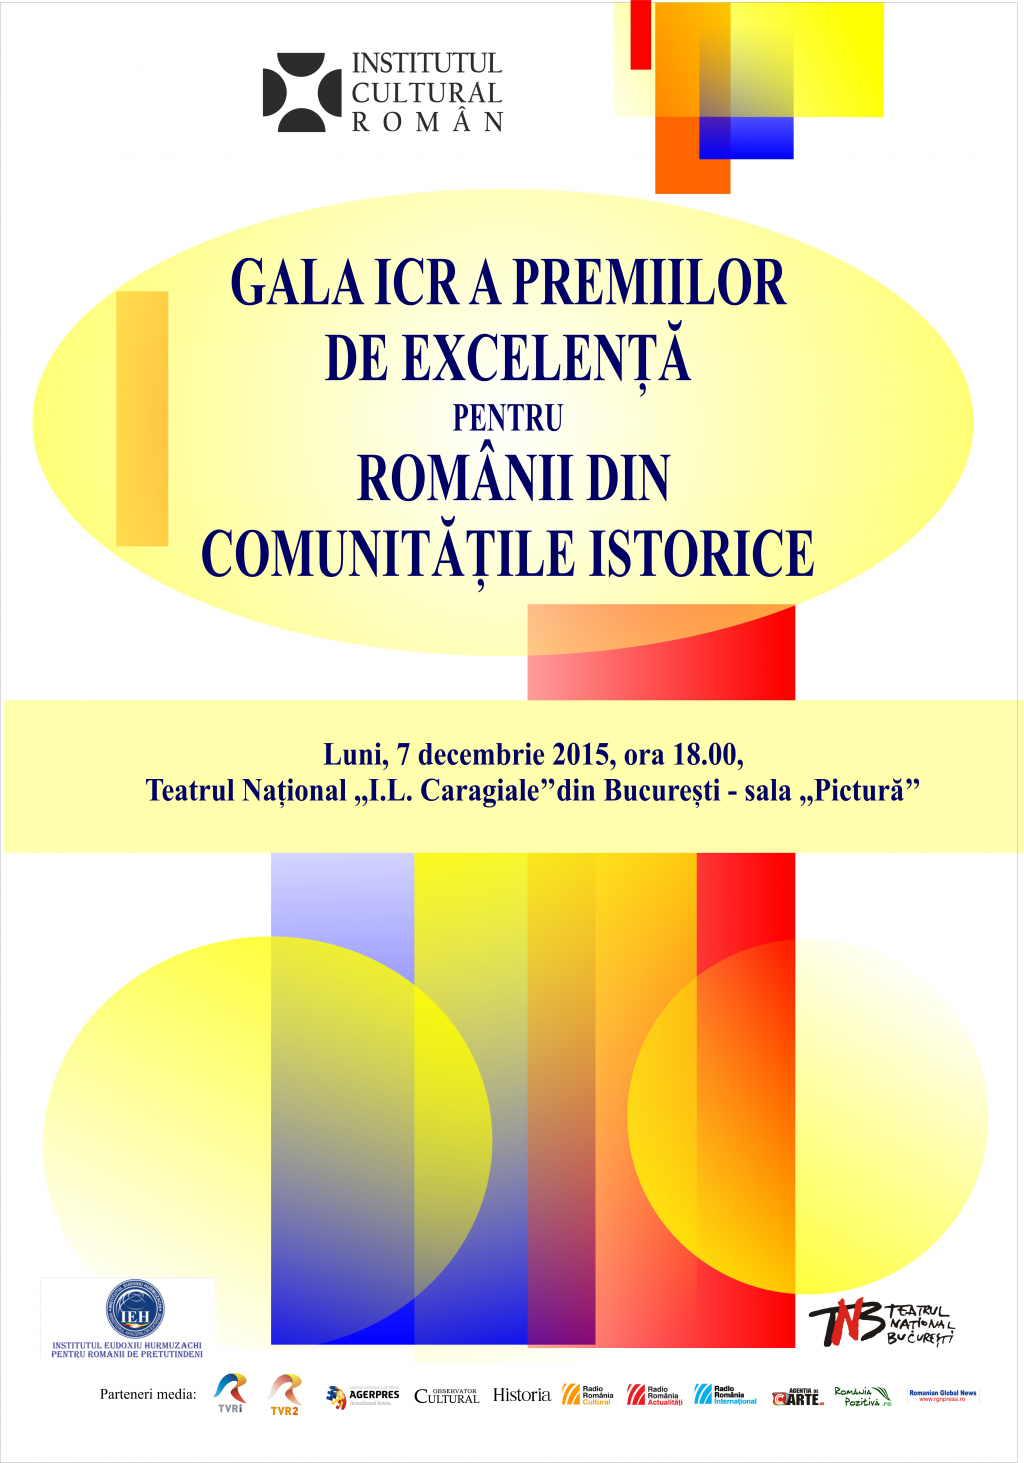 Gala premiilor de excelenta pentru etnicii romani din comunitatile istorice